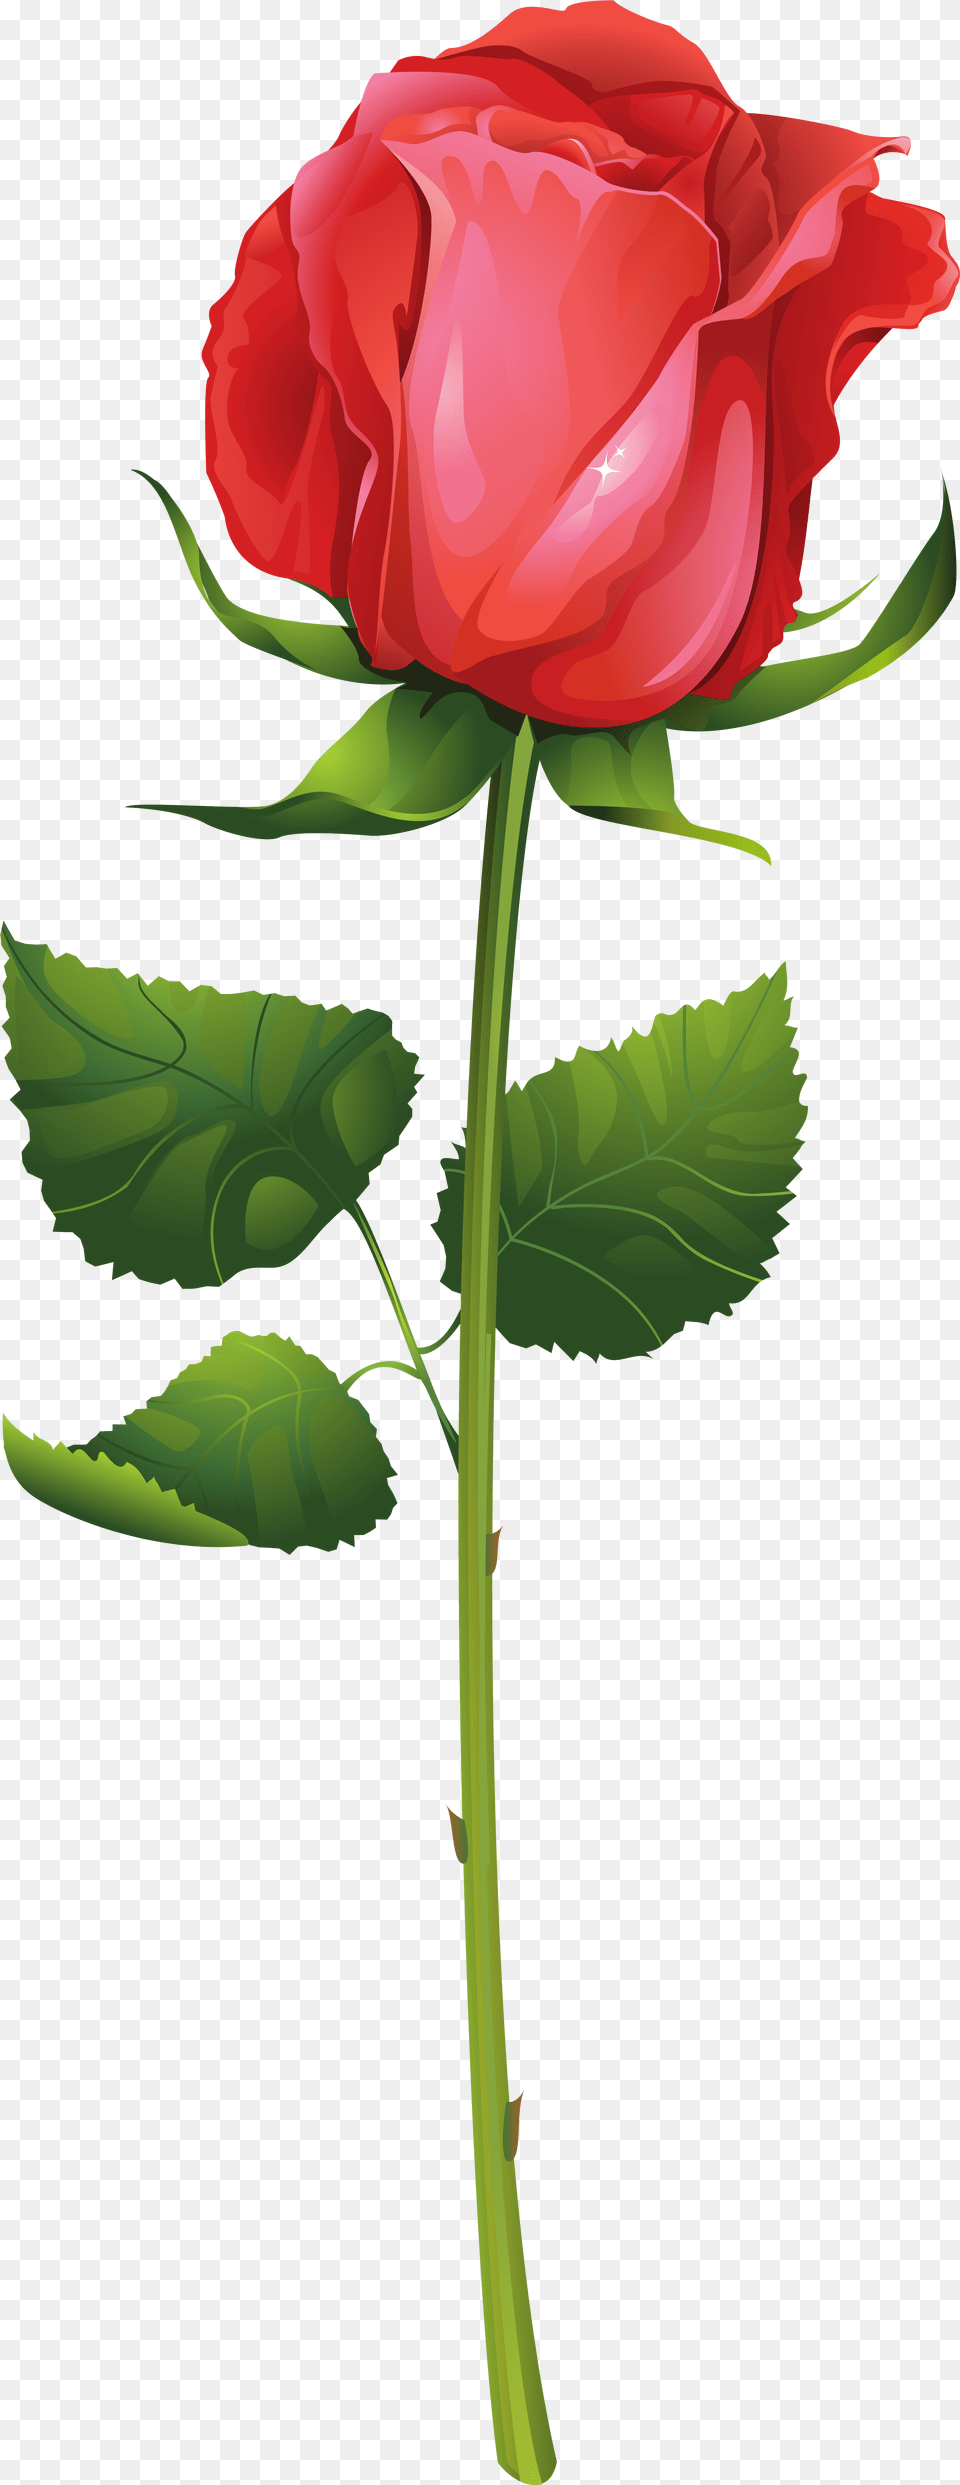 Flower With Stem Rose Illustration Vector, Plant Free Transparent Png